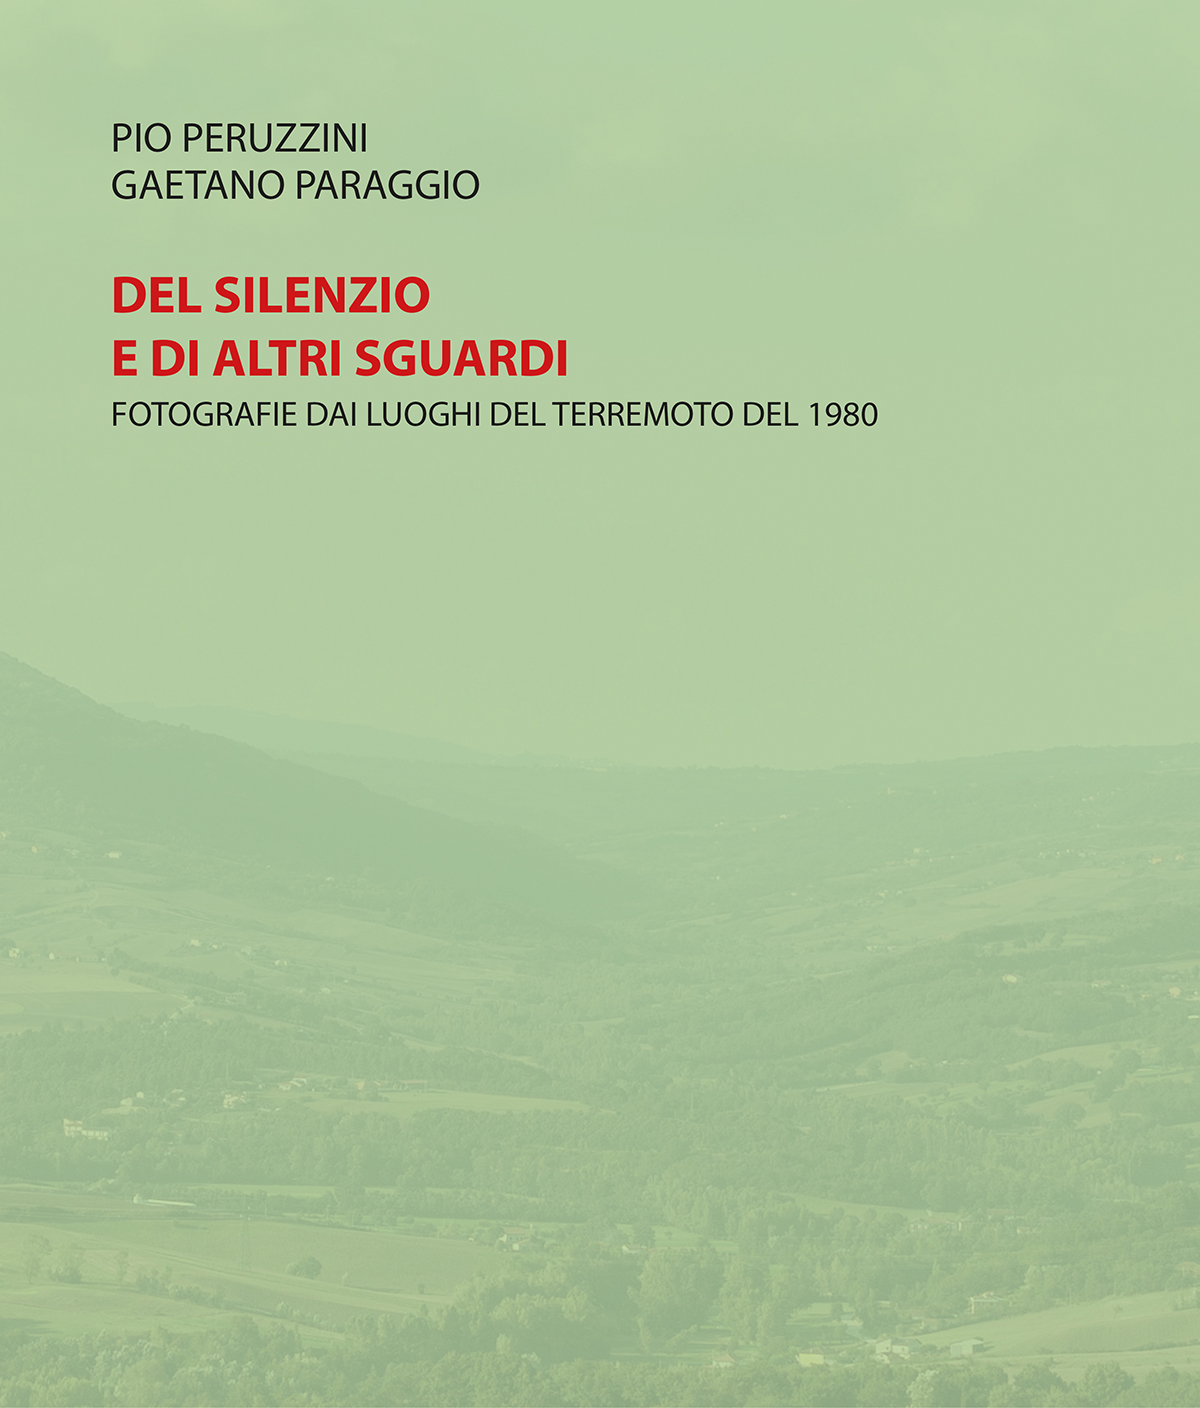 DEL SILENZIO E DI ALTRI SGUARDI  libro  quarant'anni dopo il sisma dell'Irpinia e della provincia di Salerno 